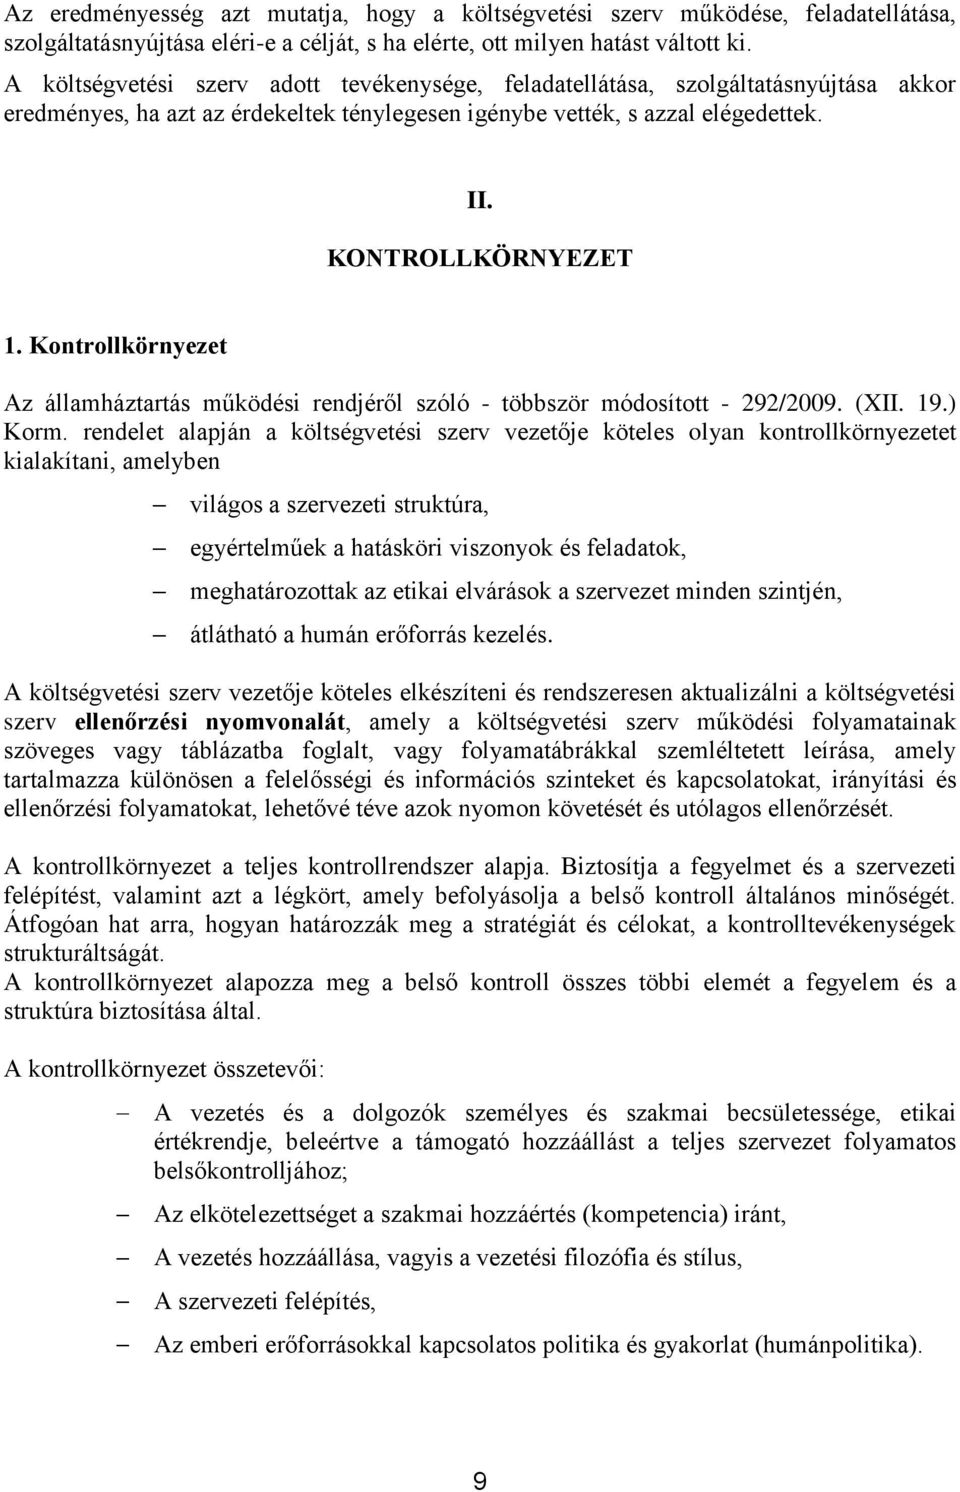 Kontrollkörnyezet Az államháztartás működési rendjéről szóló - többször módosított - 292/2009. (XII. 19.) Korm.